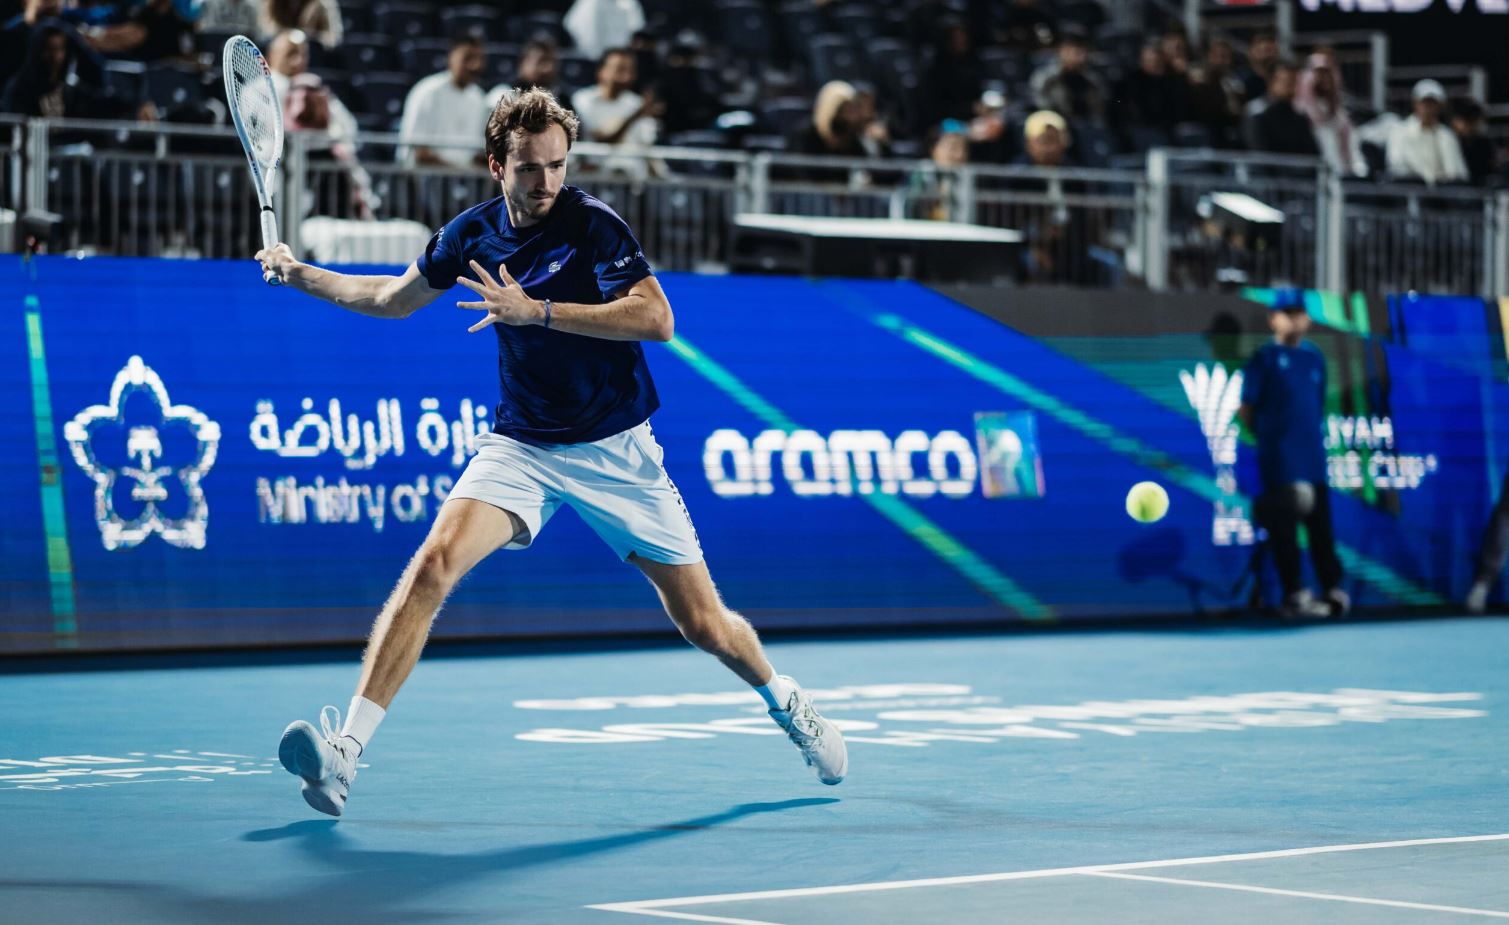 Medvedev / Fritz - Diriyah Tennis Cup 2022 (TV/Streaming) Sur quelle chaine et à quelle heure suivre la Finale ?